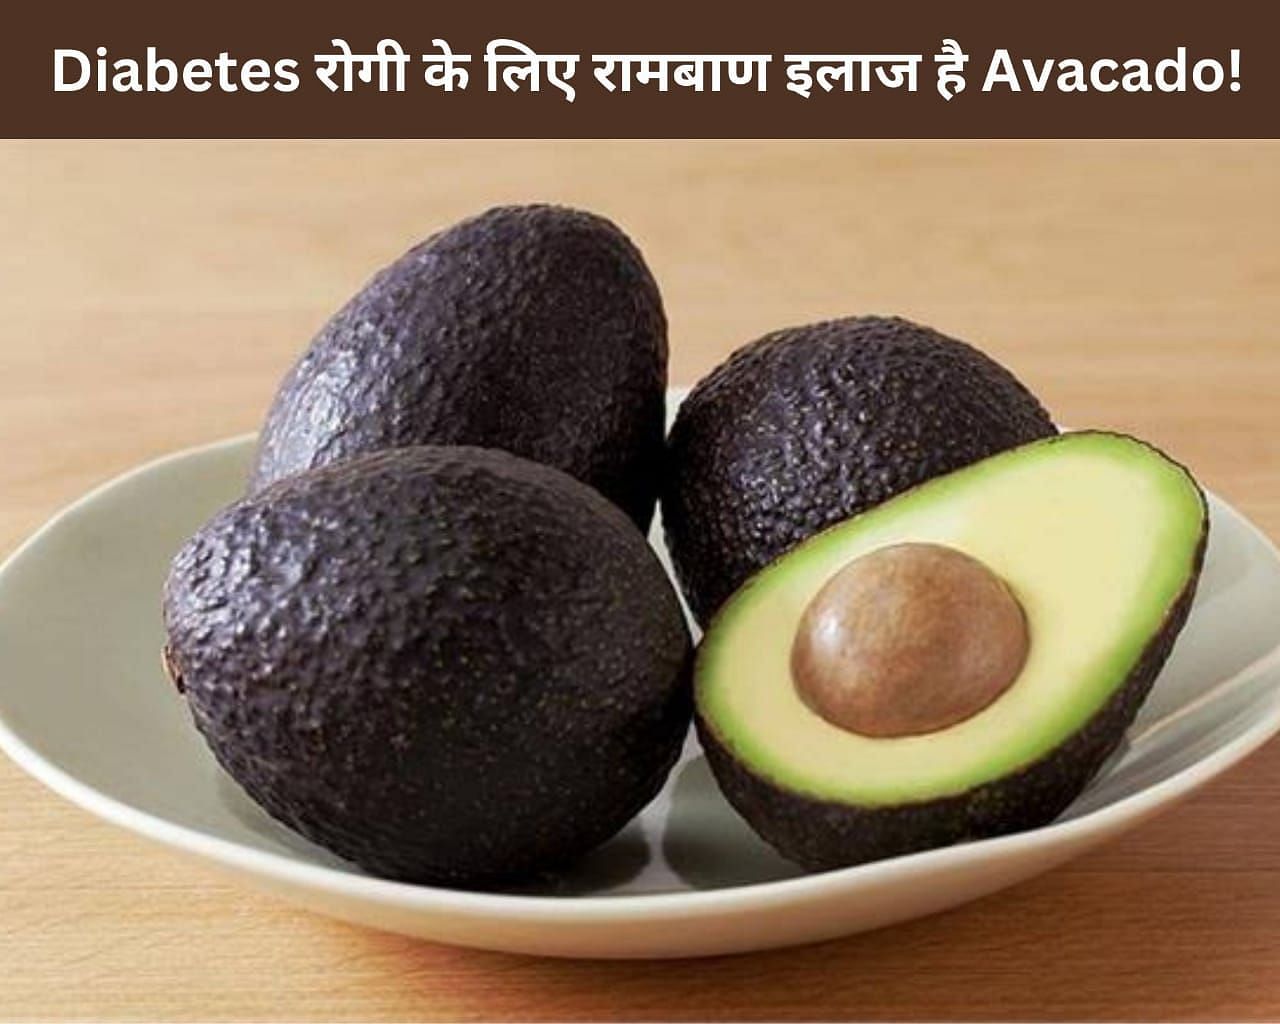 Diabetes रोगी के लिए रामबाण इलाज है Avocado! (फोटो - sportskeedaहिन्दी)